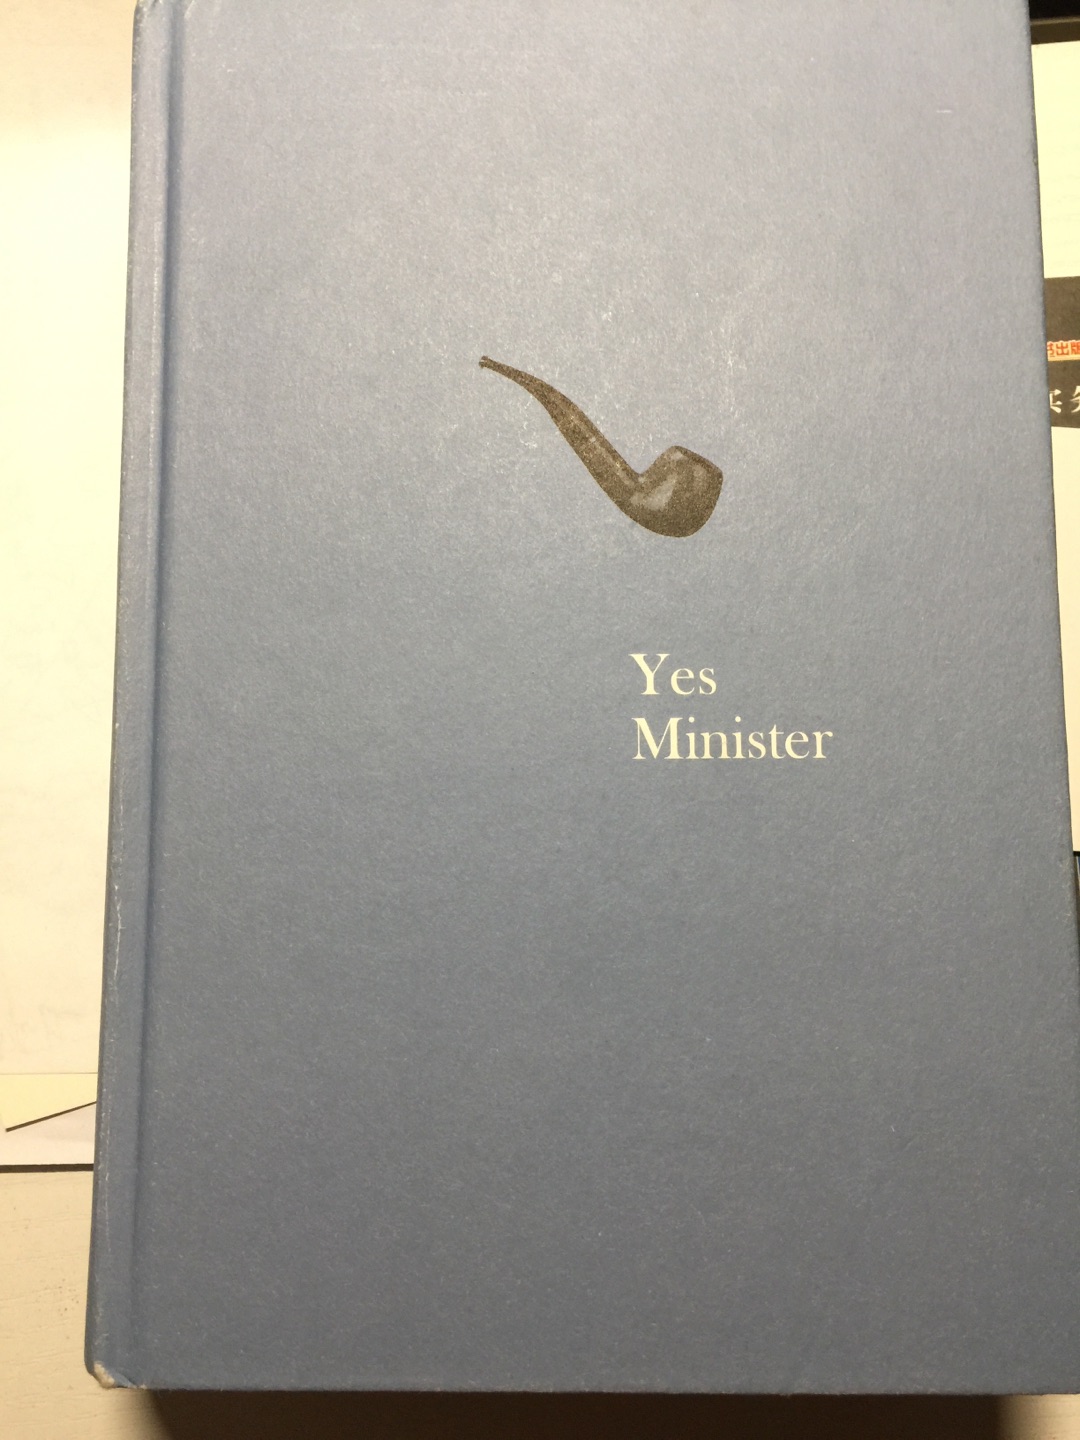 在文轩书店看到的，装帧精美，内容幽默，了解到英伦政治的一面。值得细细阅读。跟“是，首相”一起买的。刚好凑成一套。